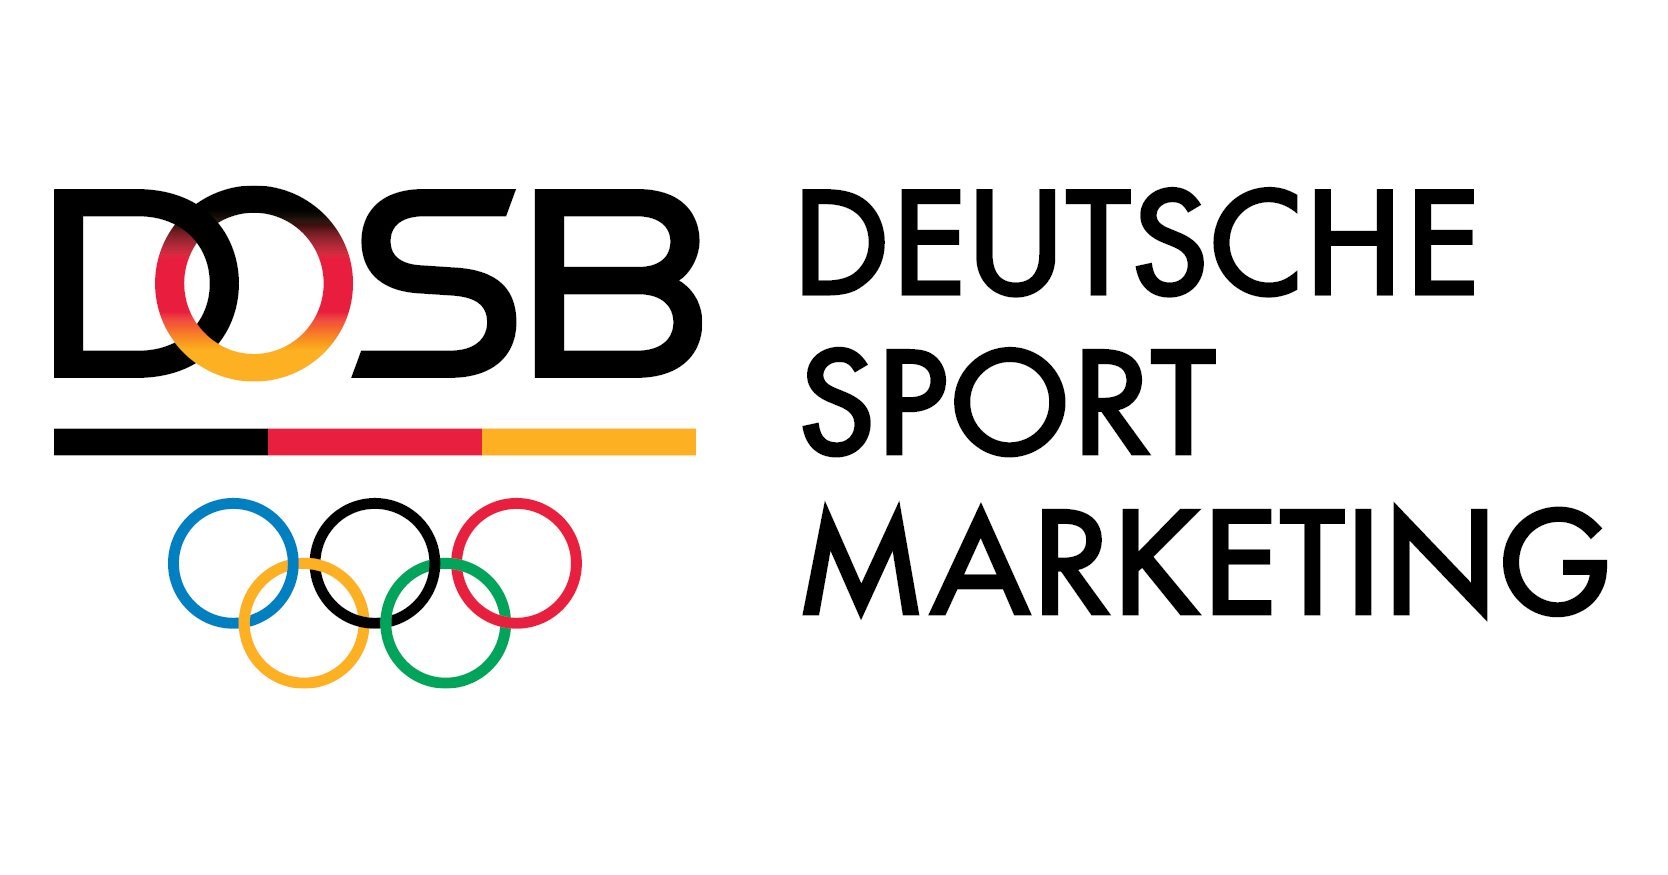 (c) Deutsche-sportwerbung.de